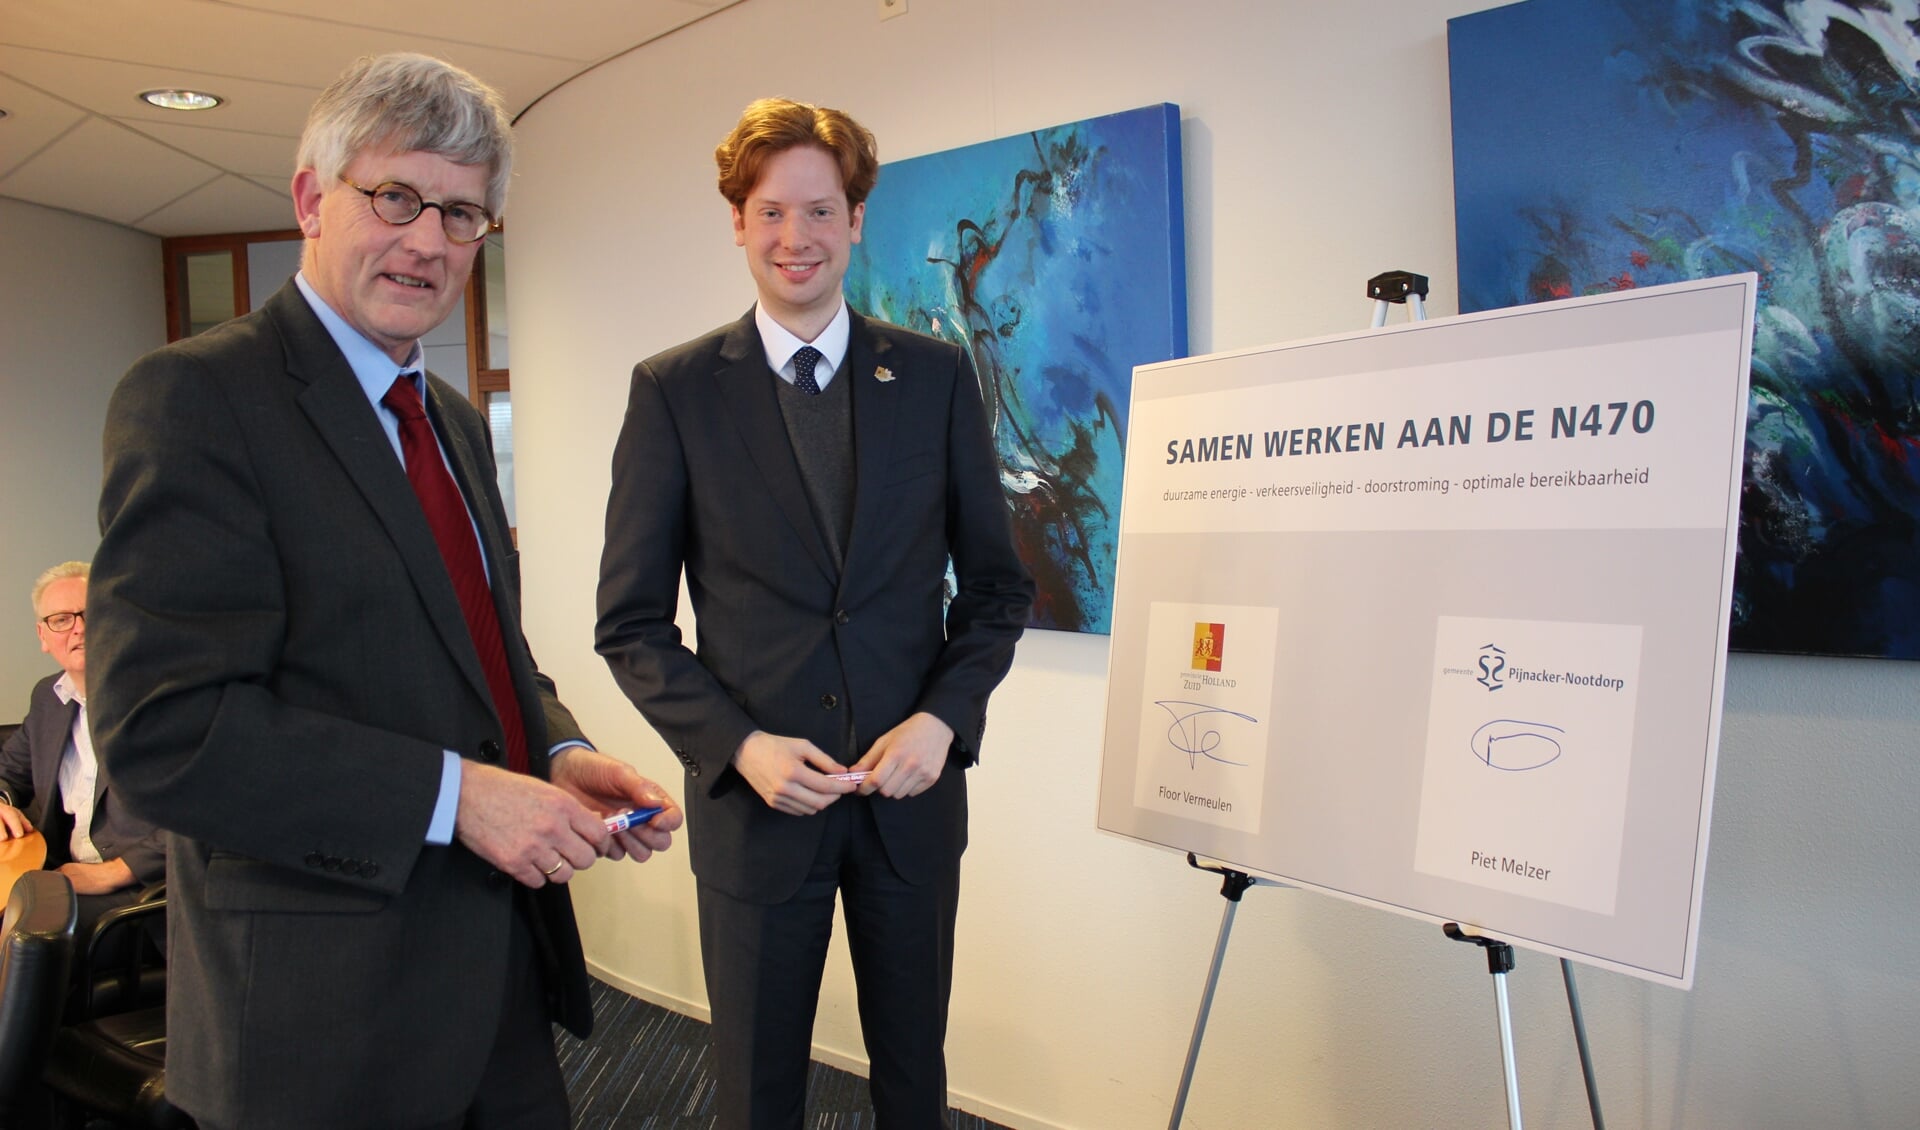 Wethouder Piet Melzer (links) van gemeente Pijnacker-Nootdorp en gedeputeerde Floor Vermeulen van provincie Zuid-Holland ondertekenden gister een convenant.